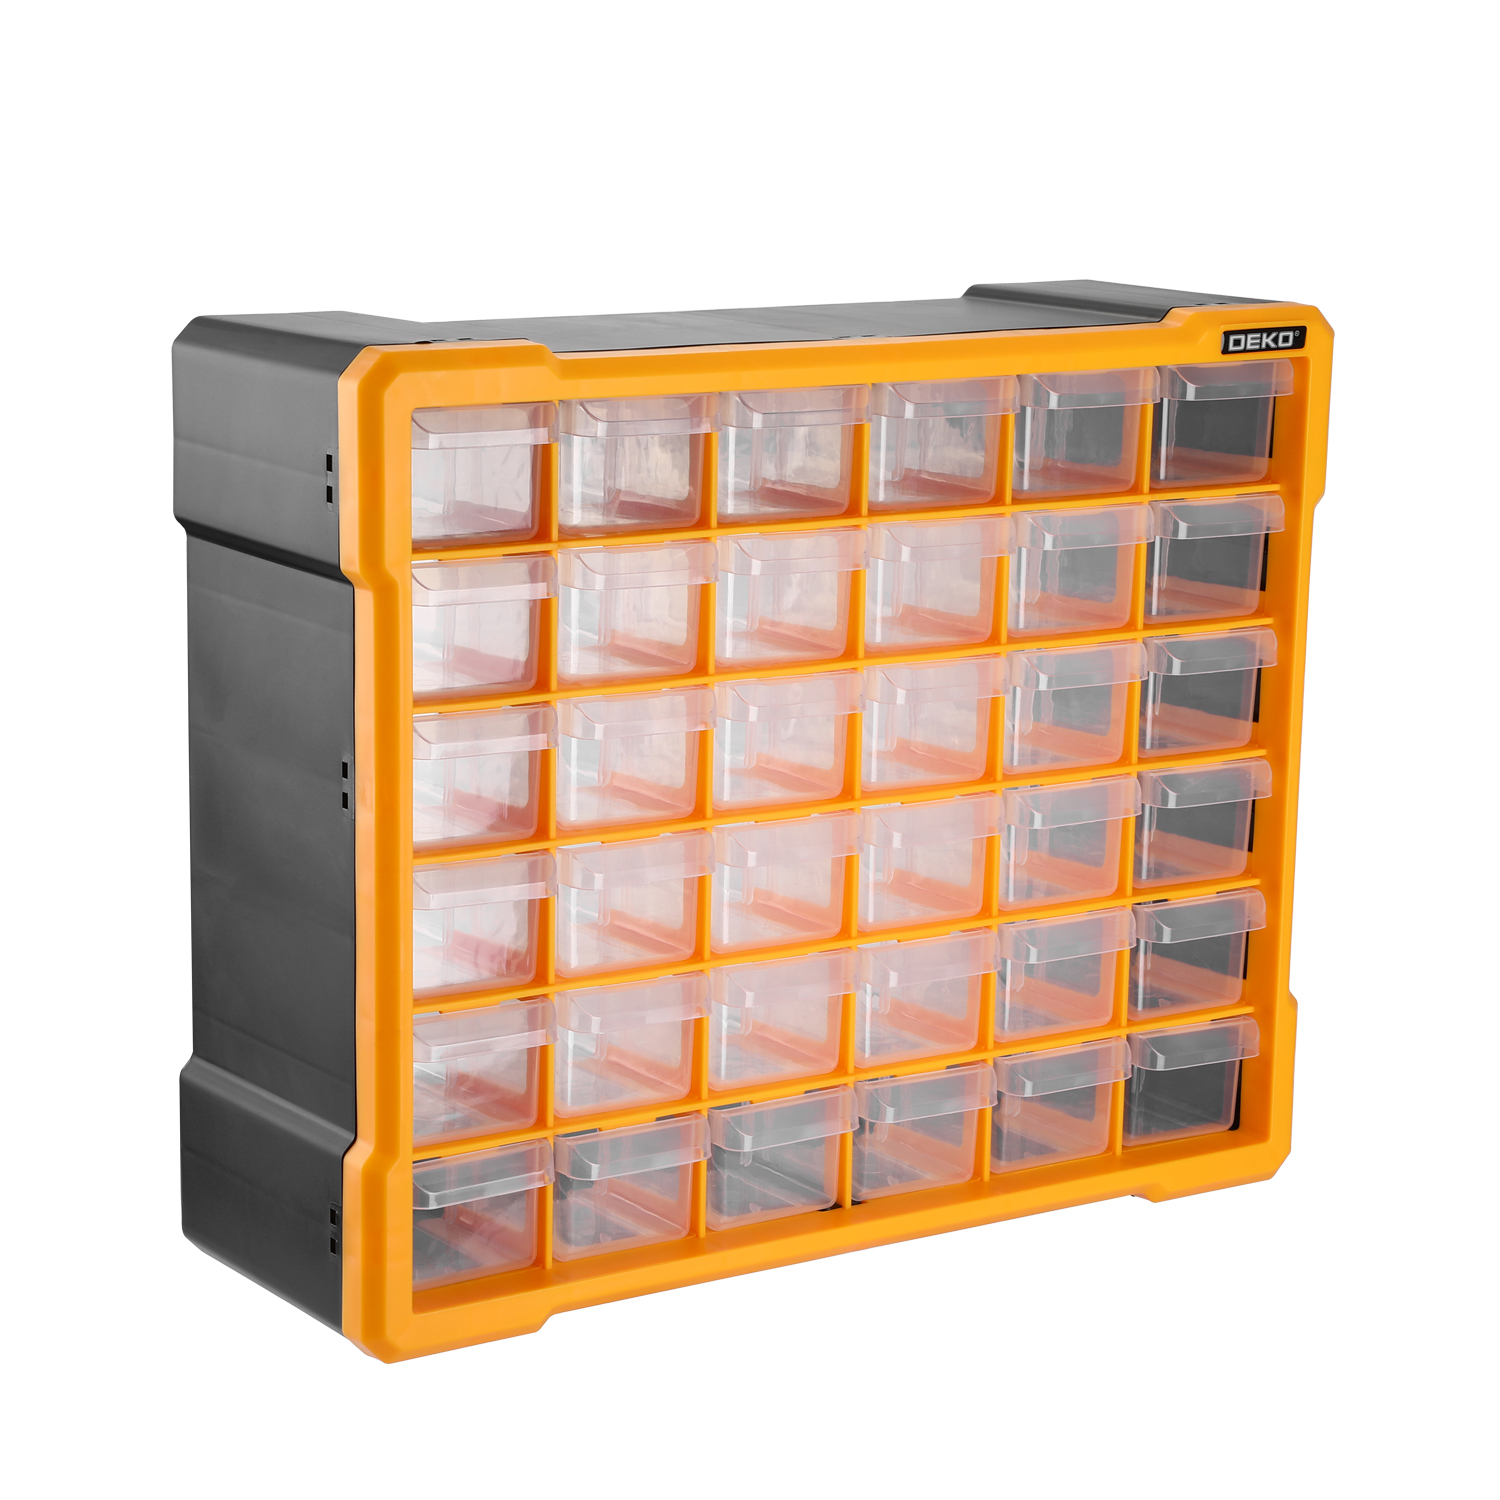 Система хранения Deko 36 ячеек 065-0805, оранжевая система приготовления пищи 0 8л оранжевый trg 049 tramp